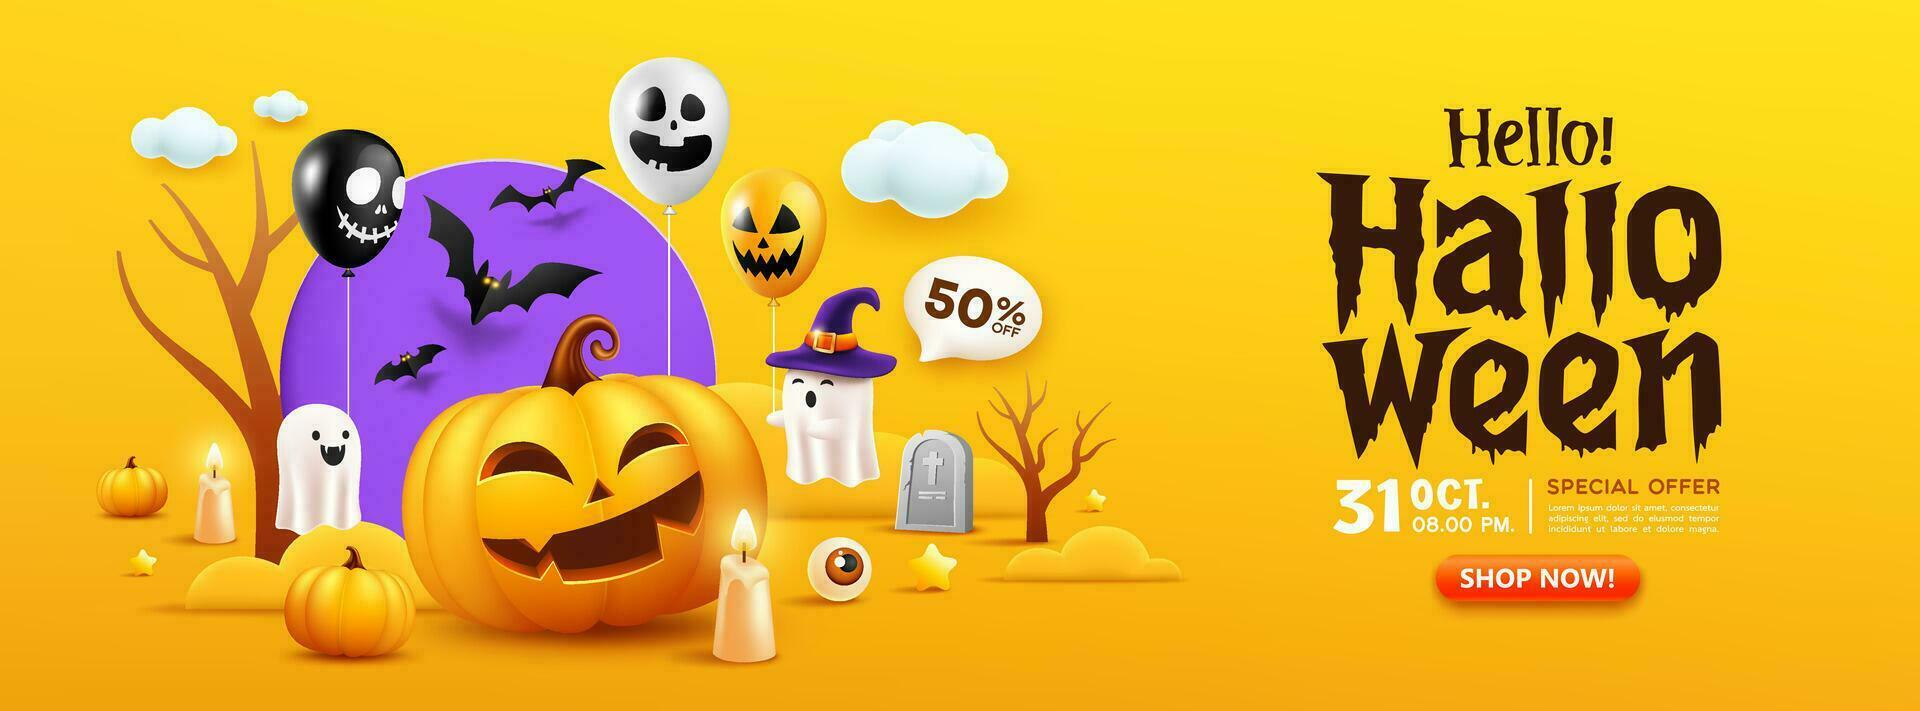 Lycklig halloween försäljning, orange pumpa leende, fladdermus flygande, ljus, spöken, och färgrik ballong baner design på gul bakgrund, eps 10 vektor illustration